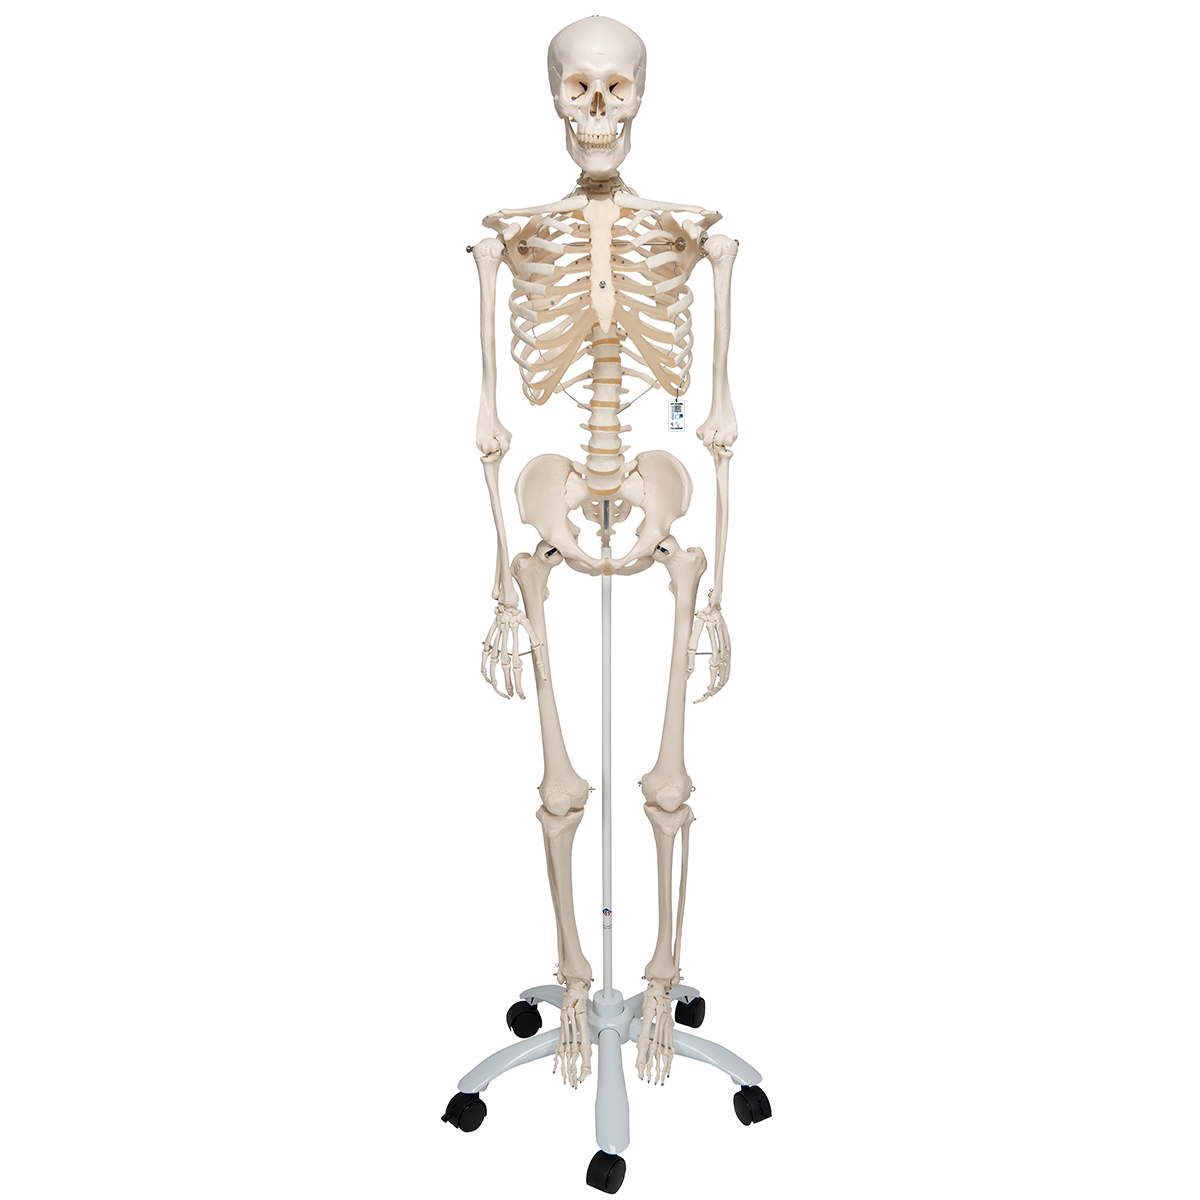 Menschliches Skelett Modell "Stan", lebensgroß, auf Metallstativ mit Rollen - 3B Smart Anatomy, Bestellnummer 1020171, A10, 3B Scientific